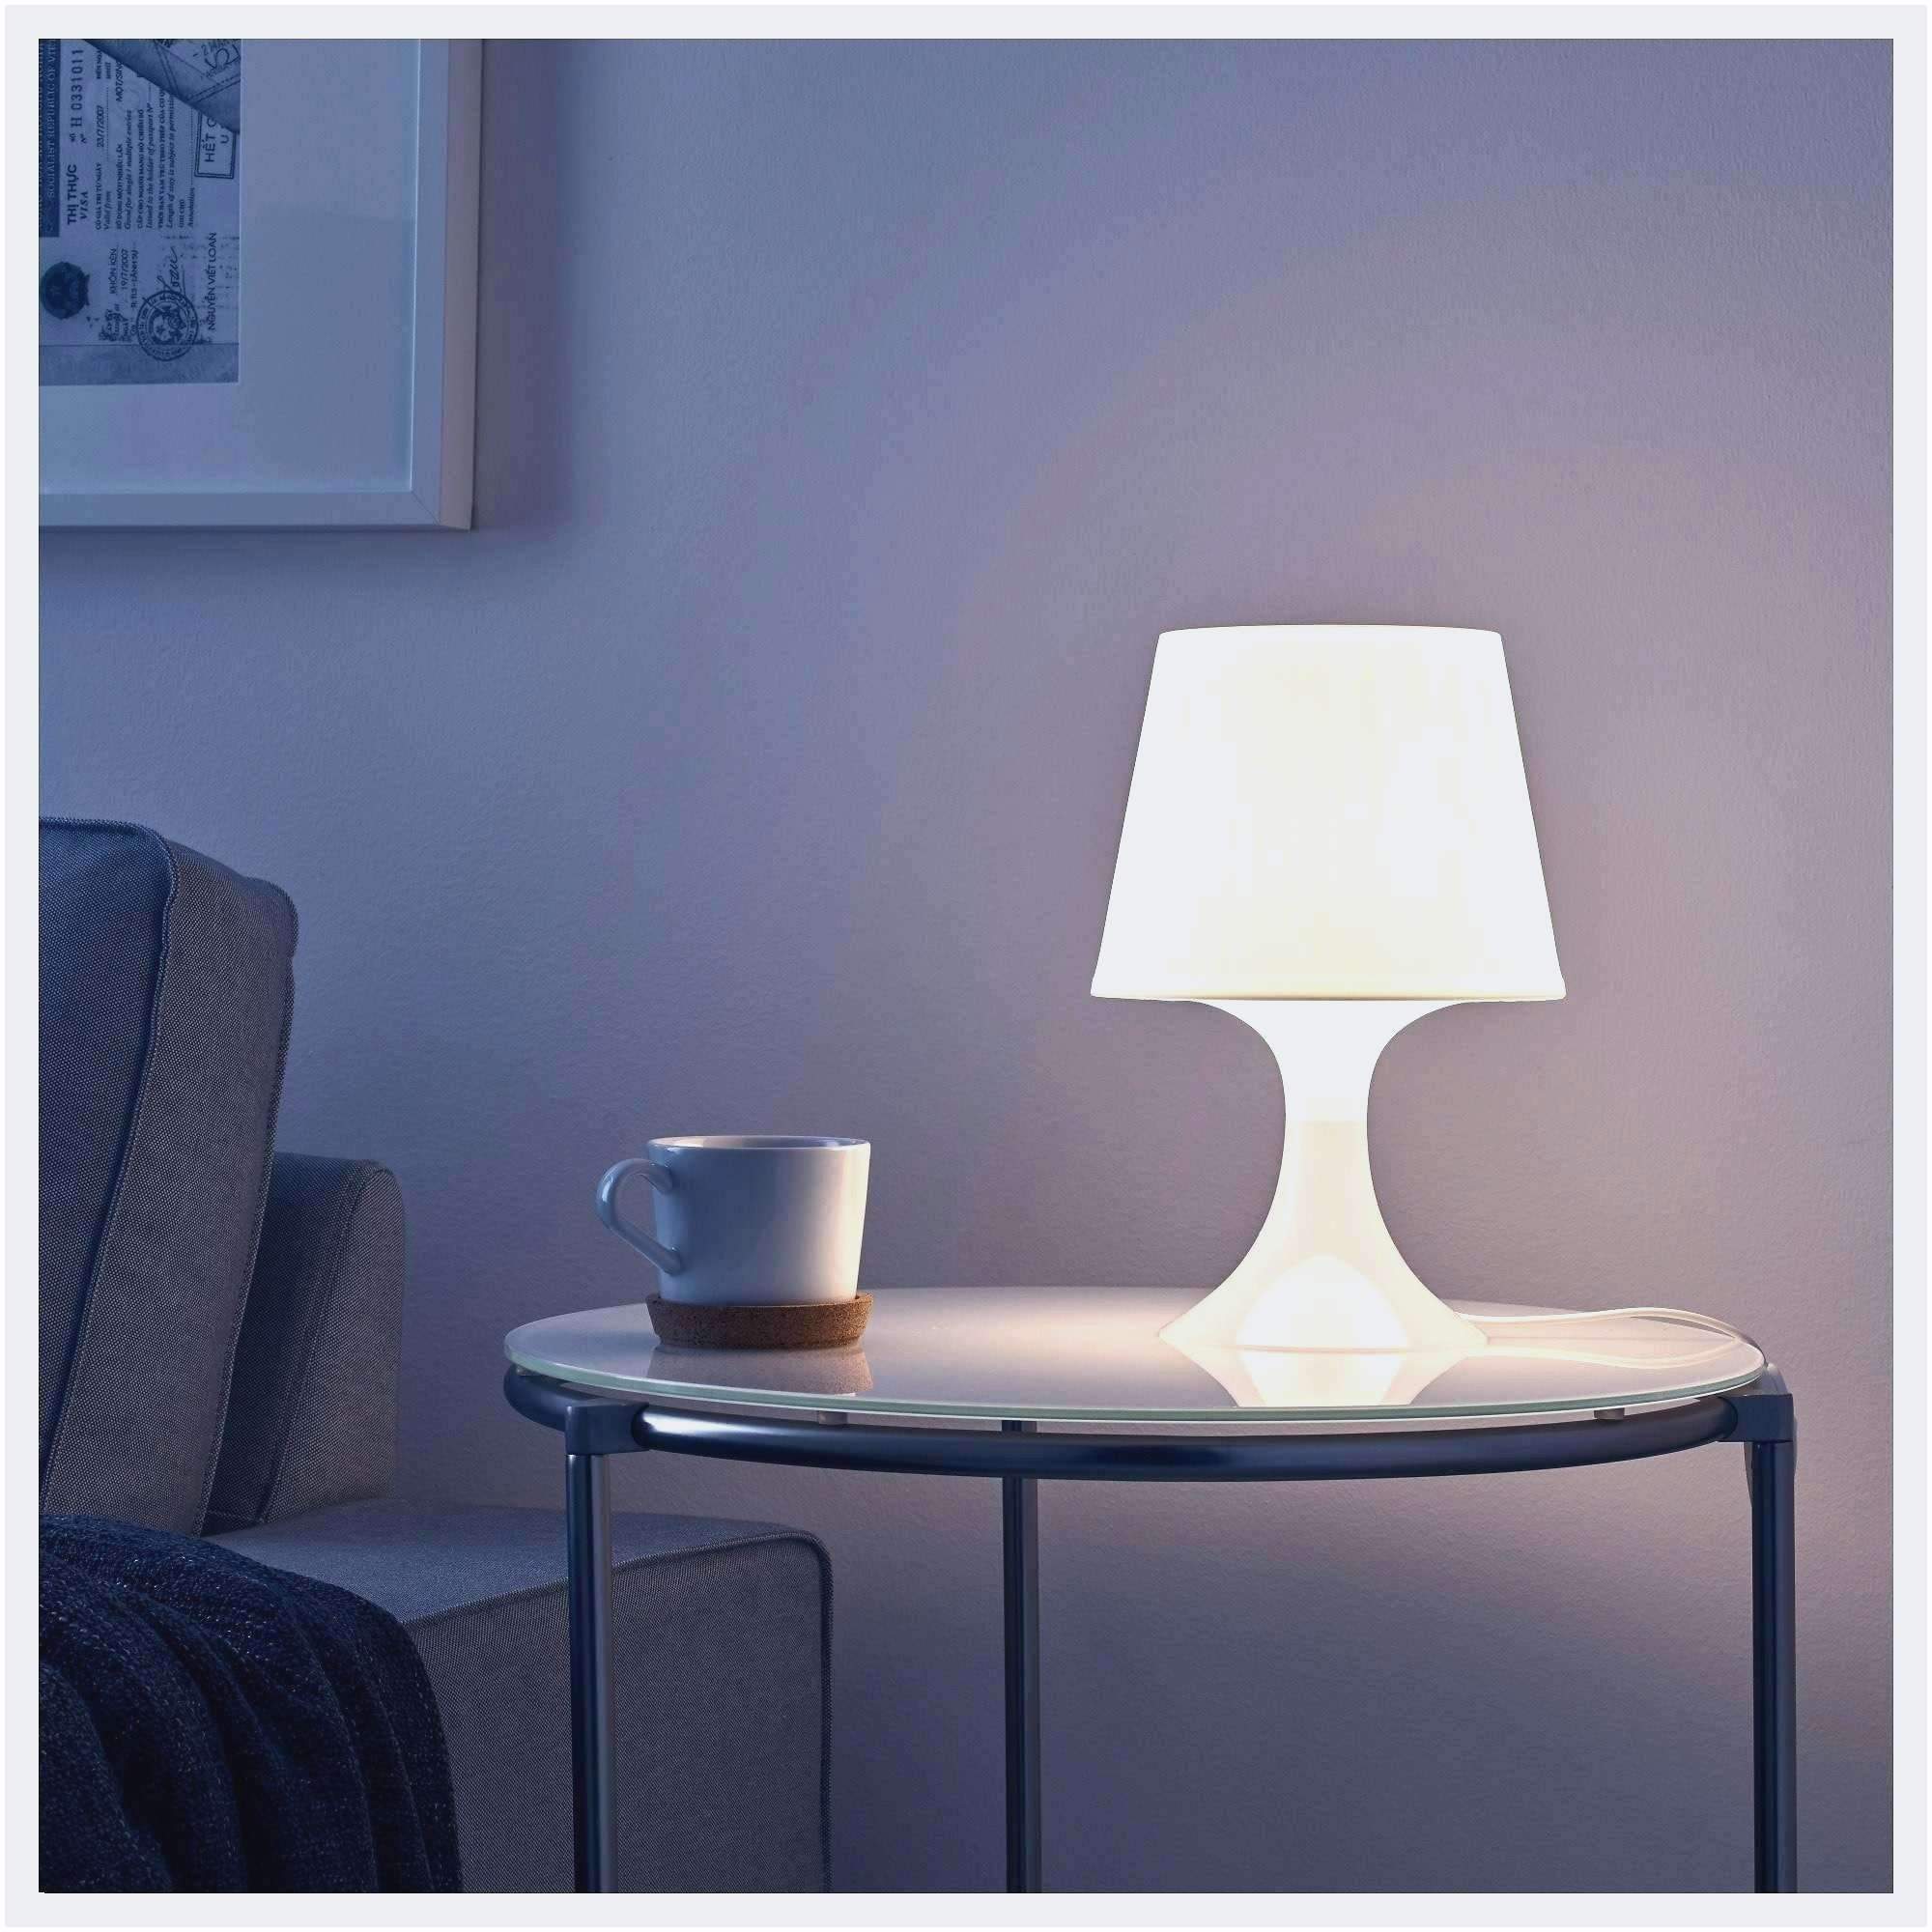 stehlampe wohnzimmer elegant stehlampe wohnzimmer design design tipps von experten in of stehlampe wohnzimmer